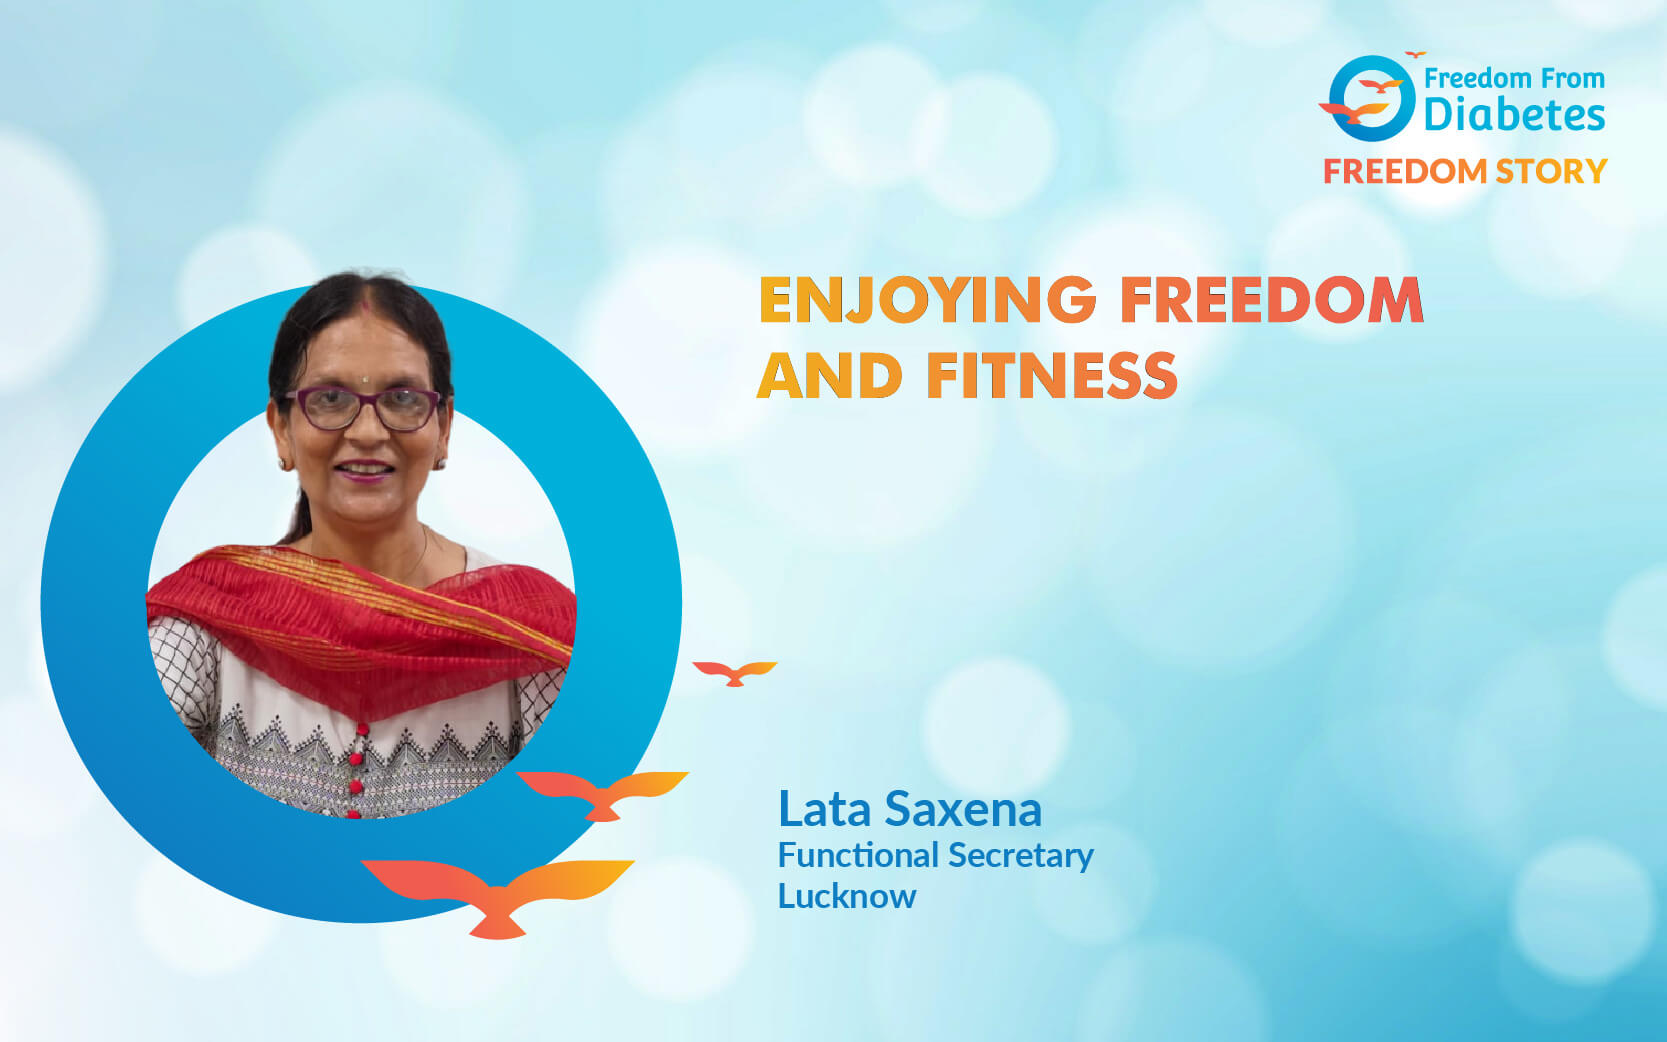 Mrs. Lata Saxena